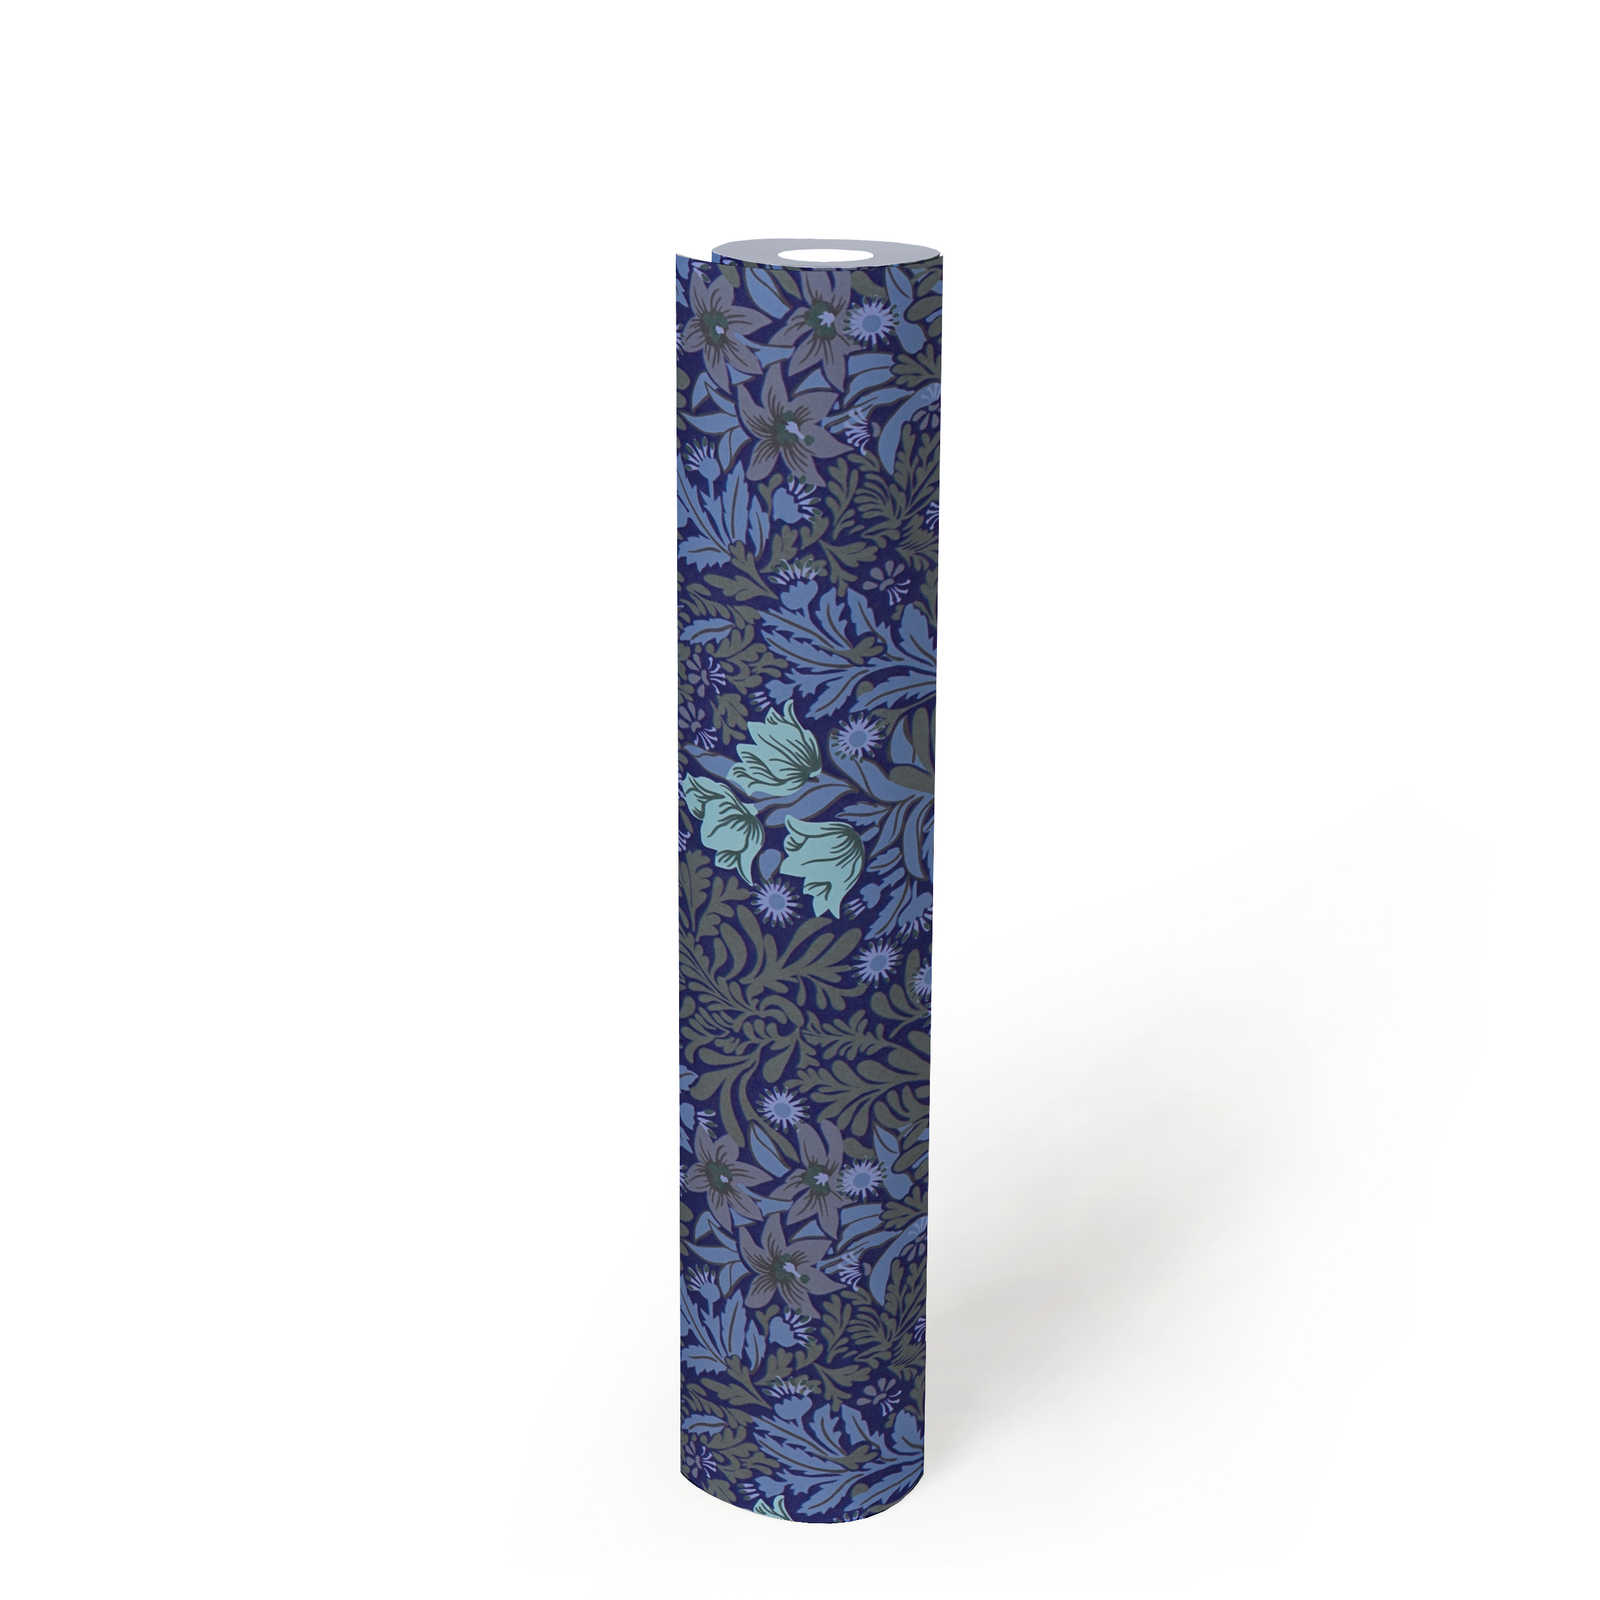             Papel pintado no tejido floral con zarcillos de hojas y flores - azul, gris, verde
        